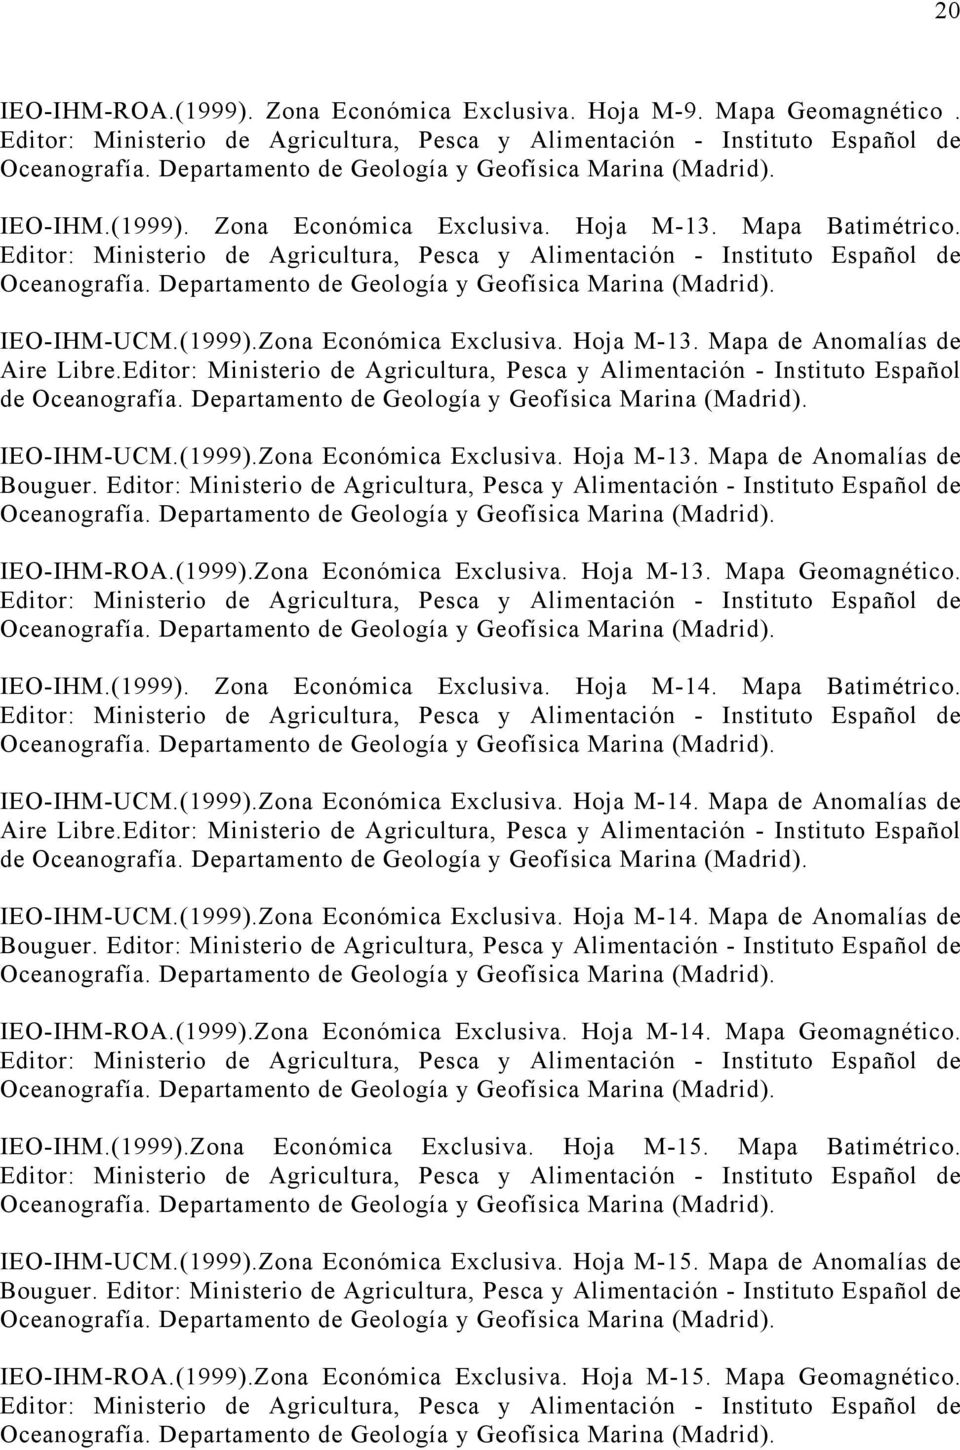 IEO-IHM.(1999). Zona Económica Exclusiva. Hoja M-14. Mapa Batimétrico. IEO-IHM-UCM.(1999).Zona Económica Exclusiva. Hoja M-14. Mapa de Anomalías de Aire Libre.